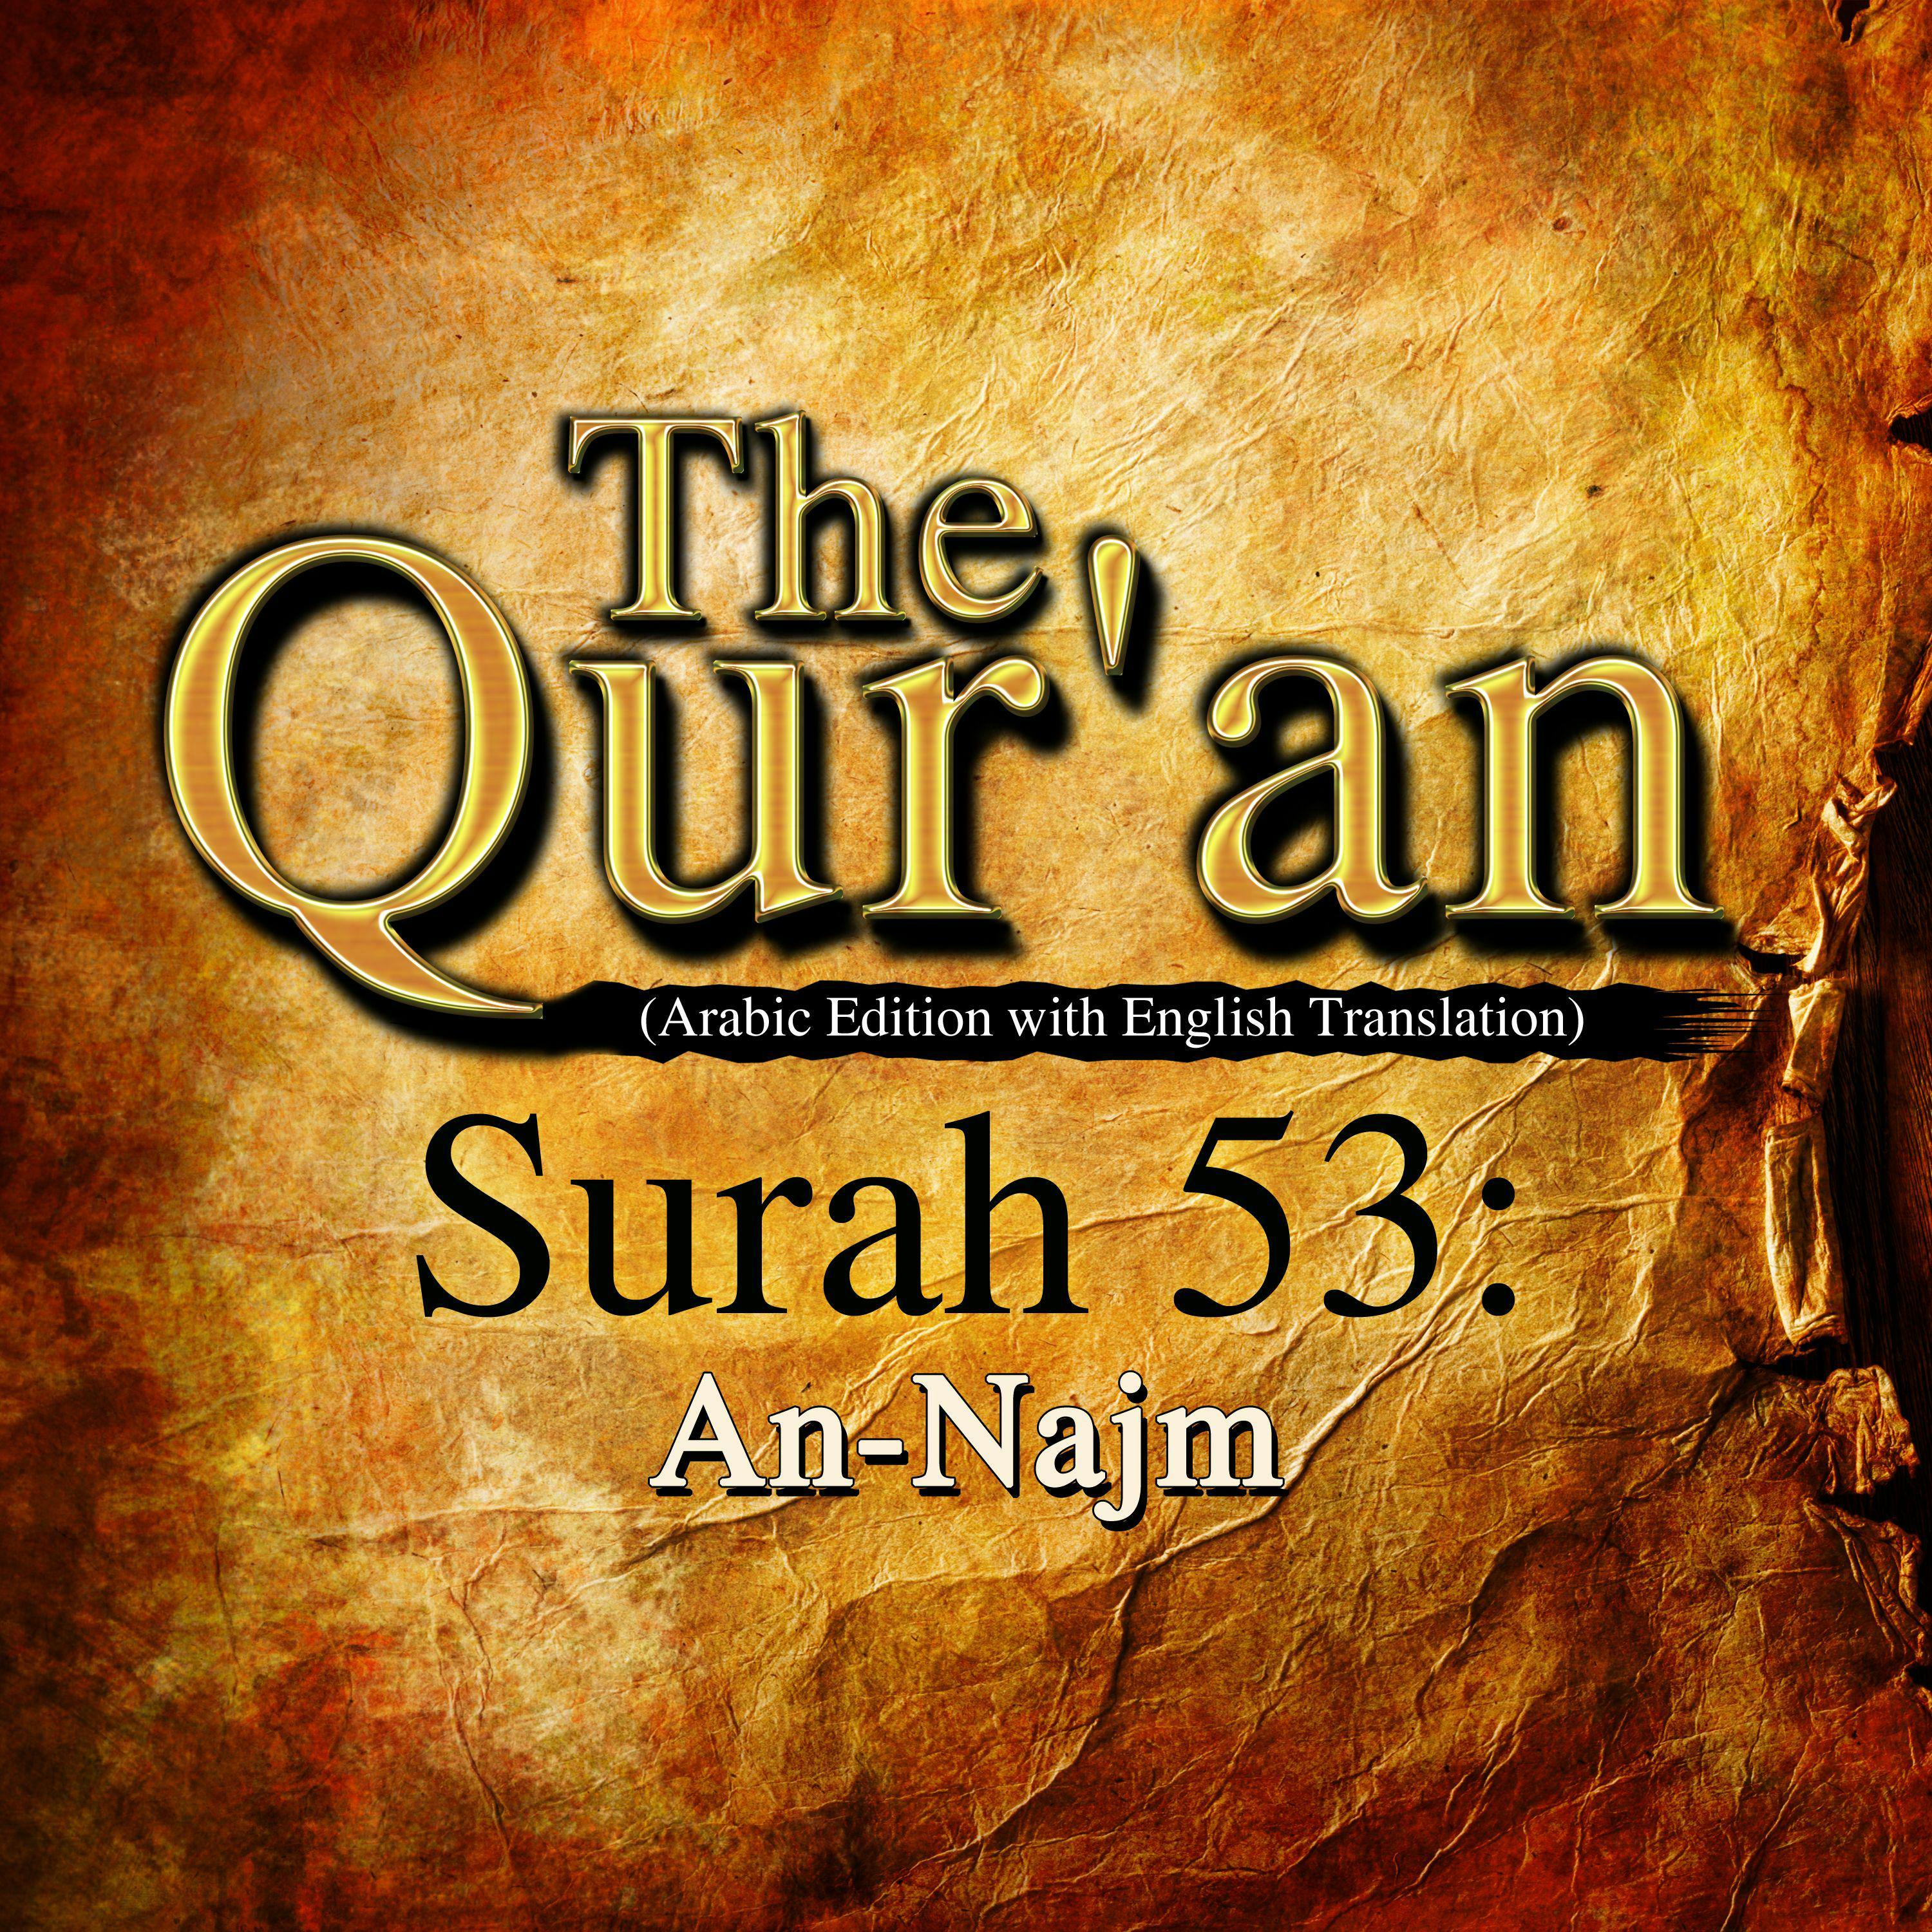 The Qur'an: Surah 53: An-Najm - undefined